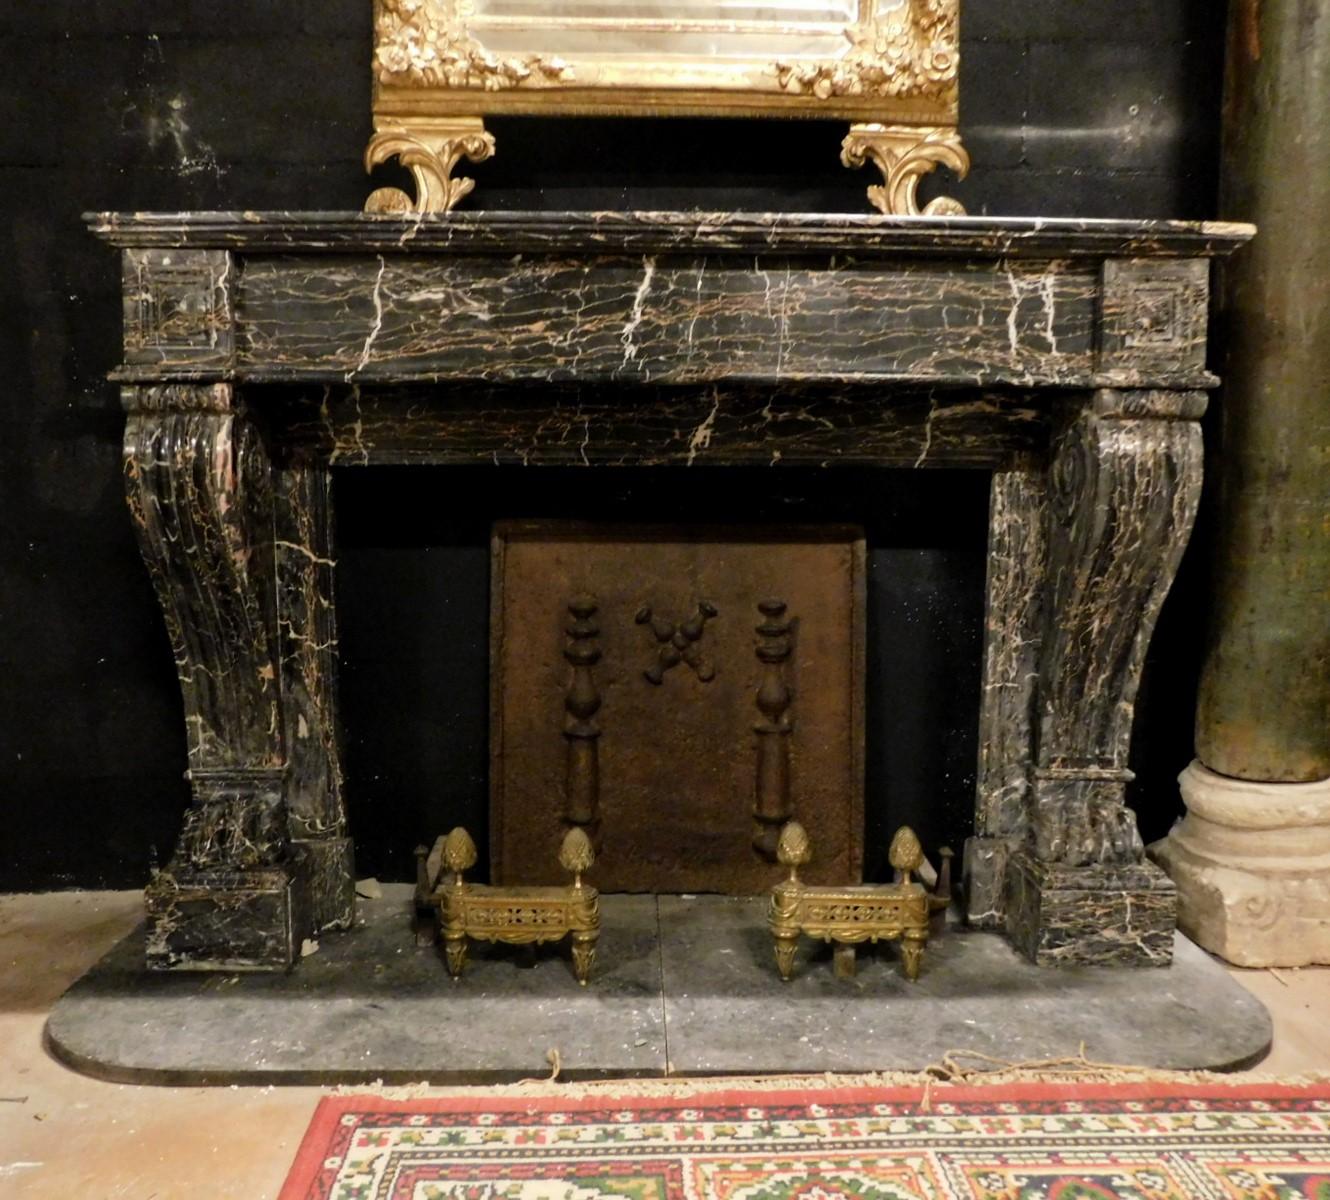 Antiker Kamin aus schwarzem Portoro-Marmor (La Spezia) mit Skulpturen von Löwentatzen, handgefertigt im 19. Jahrhundert für einen bedeutenden ligurischen Palast (Italien).
Schön und von großem Charakter, die Farbe des Marmors ist selten und